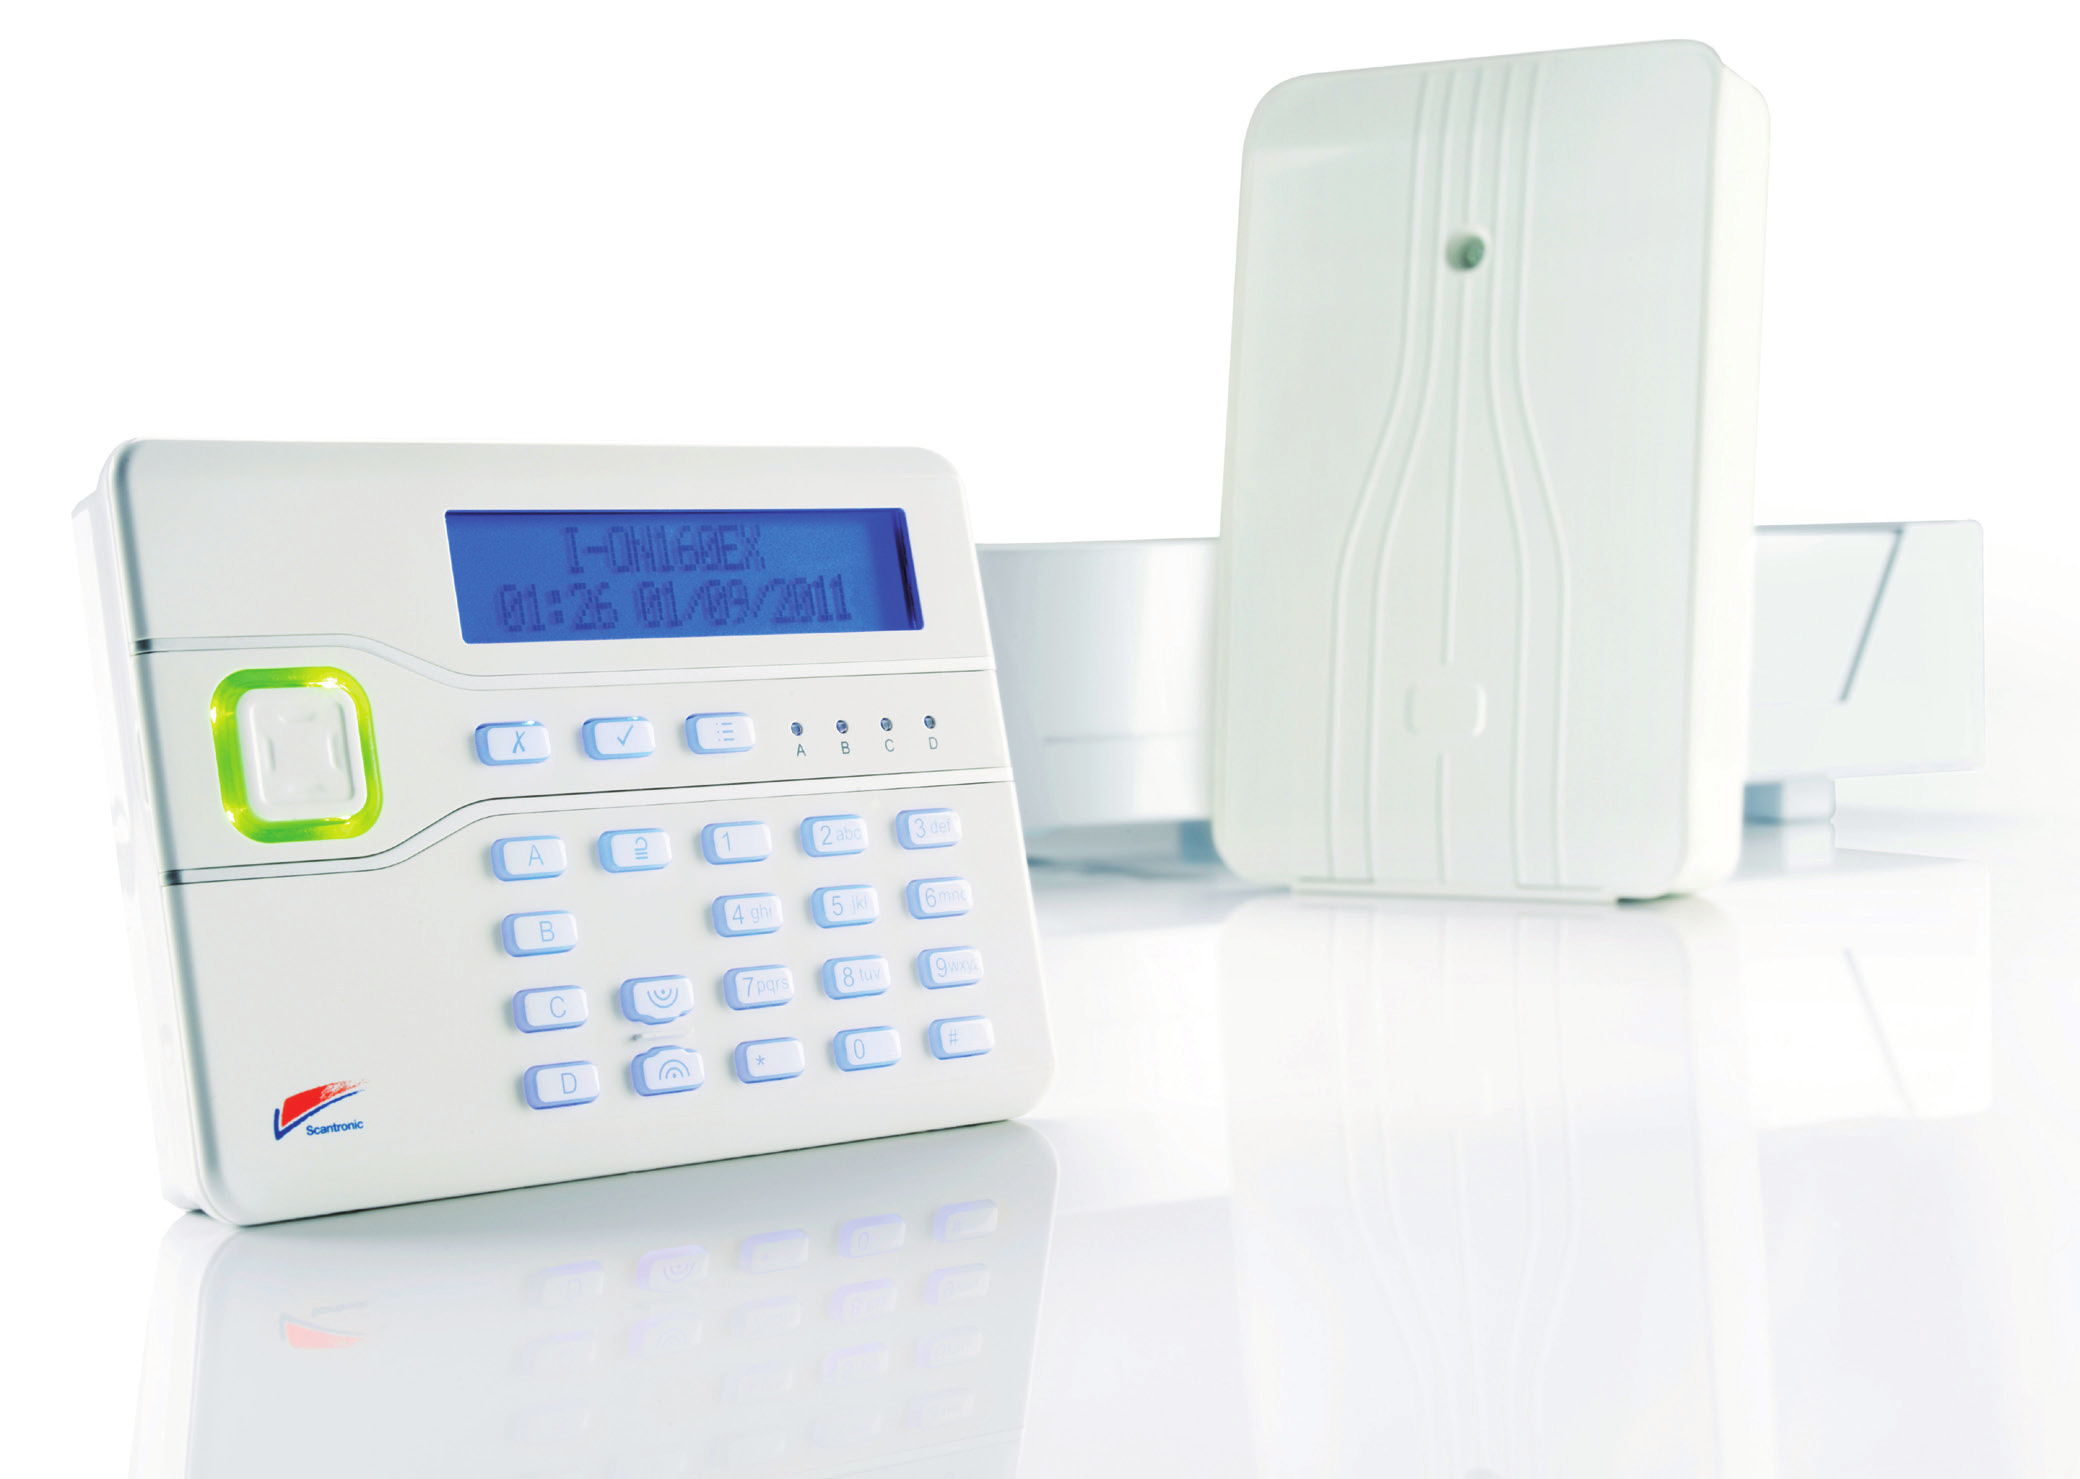 Sistemi di sicurezza wireless, cablati ed ibridi I-ON è la nuova famiglia di sistemi di allarme Scantronic.